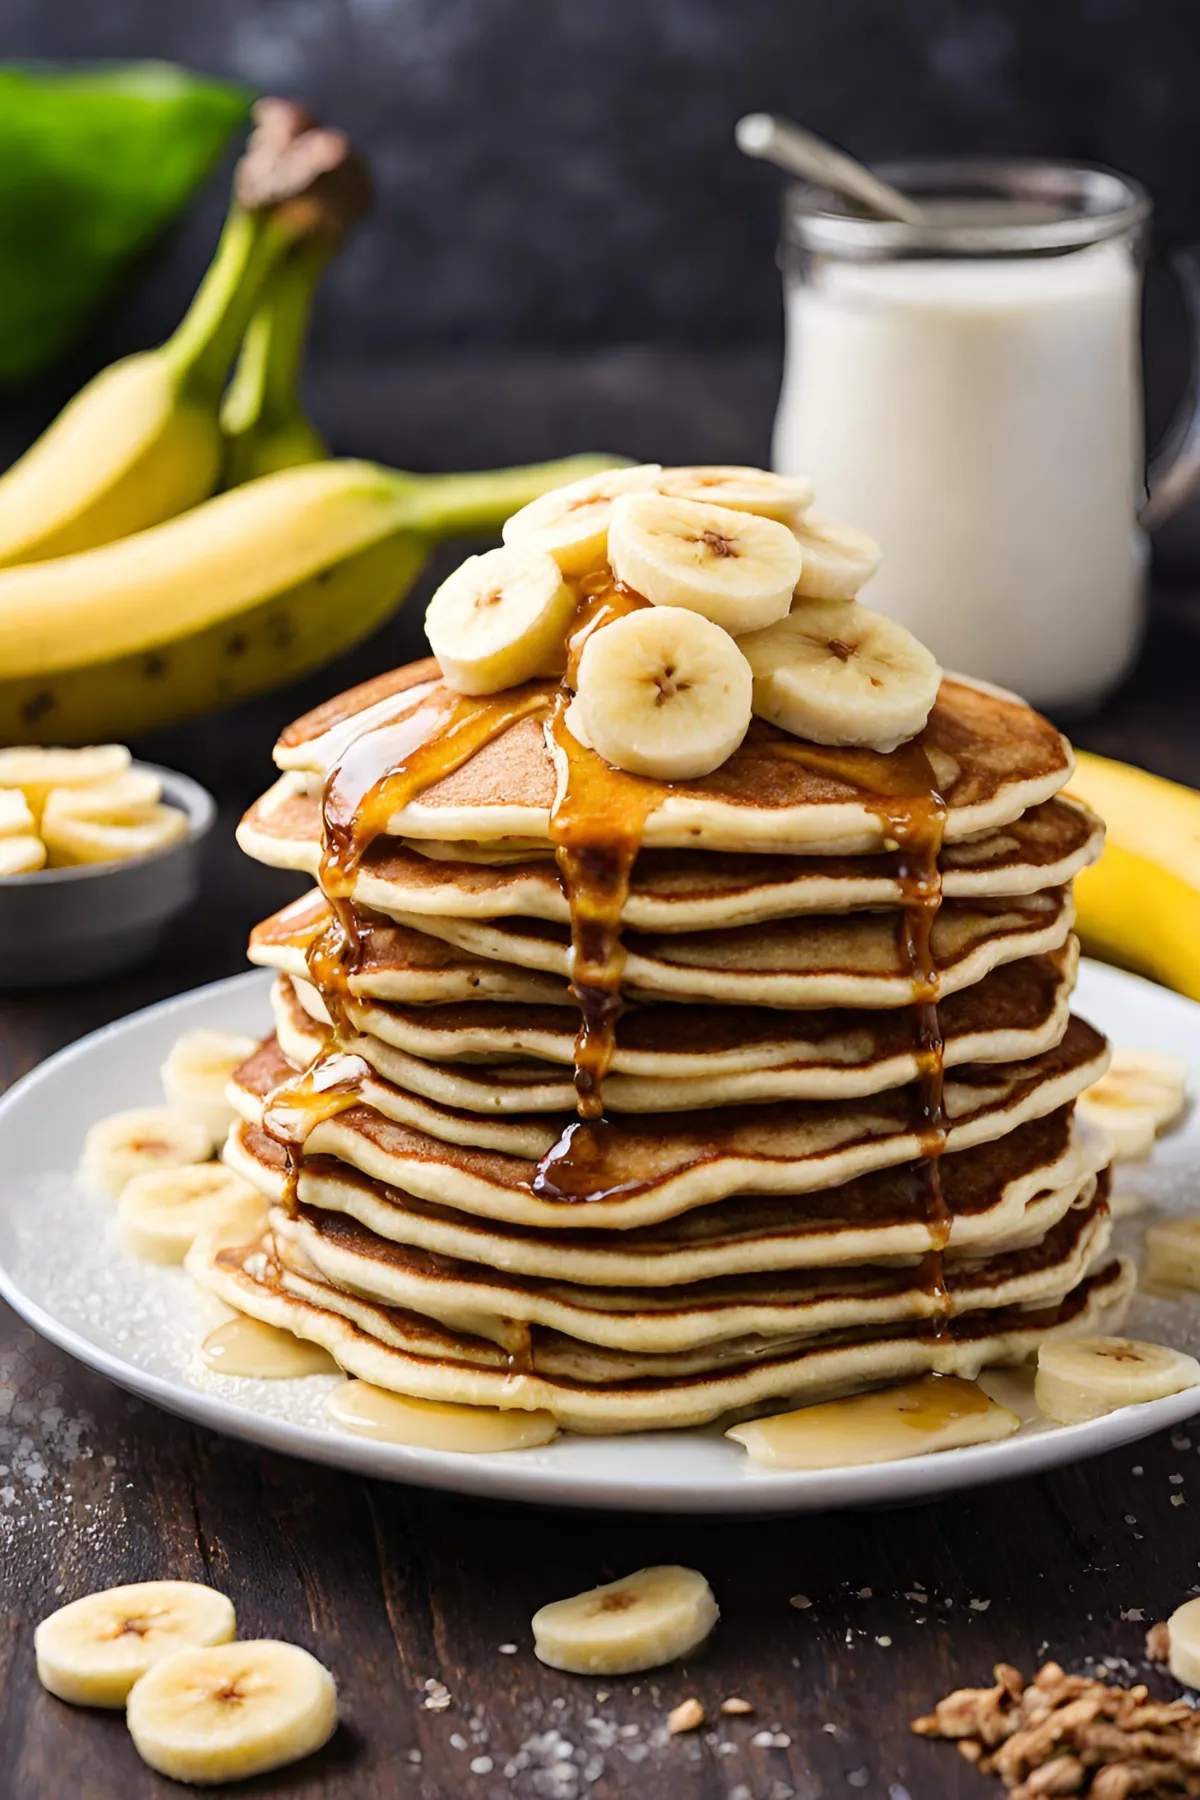 Benefits of Using Pancake Mix for Banana Pancakes